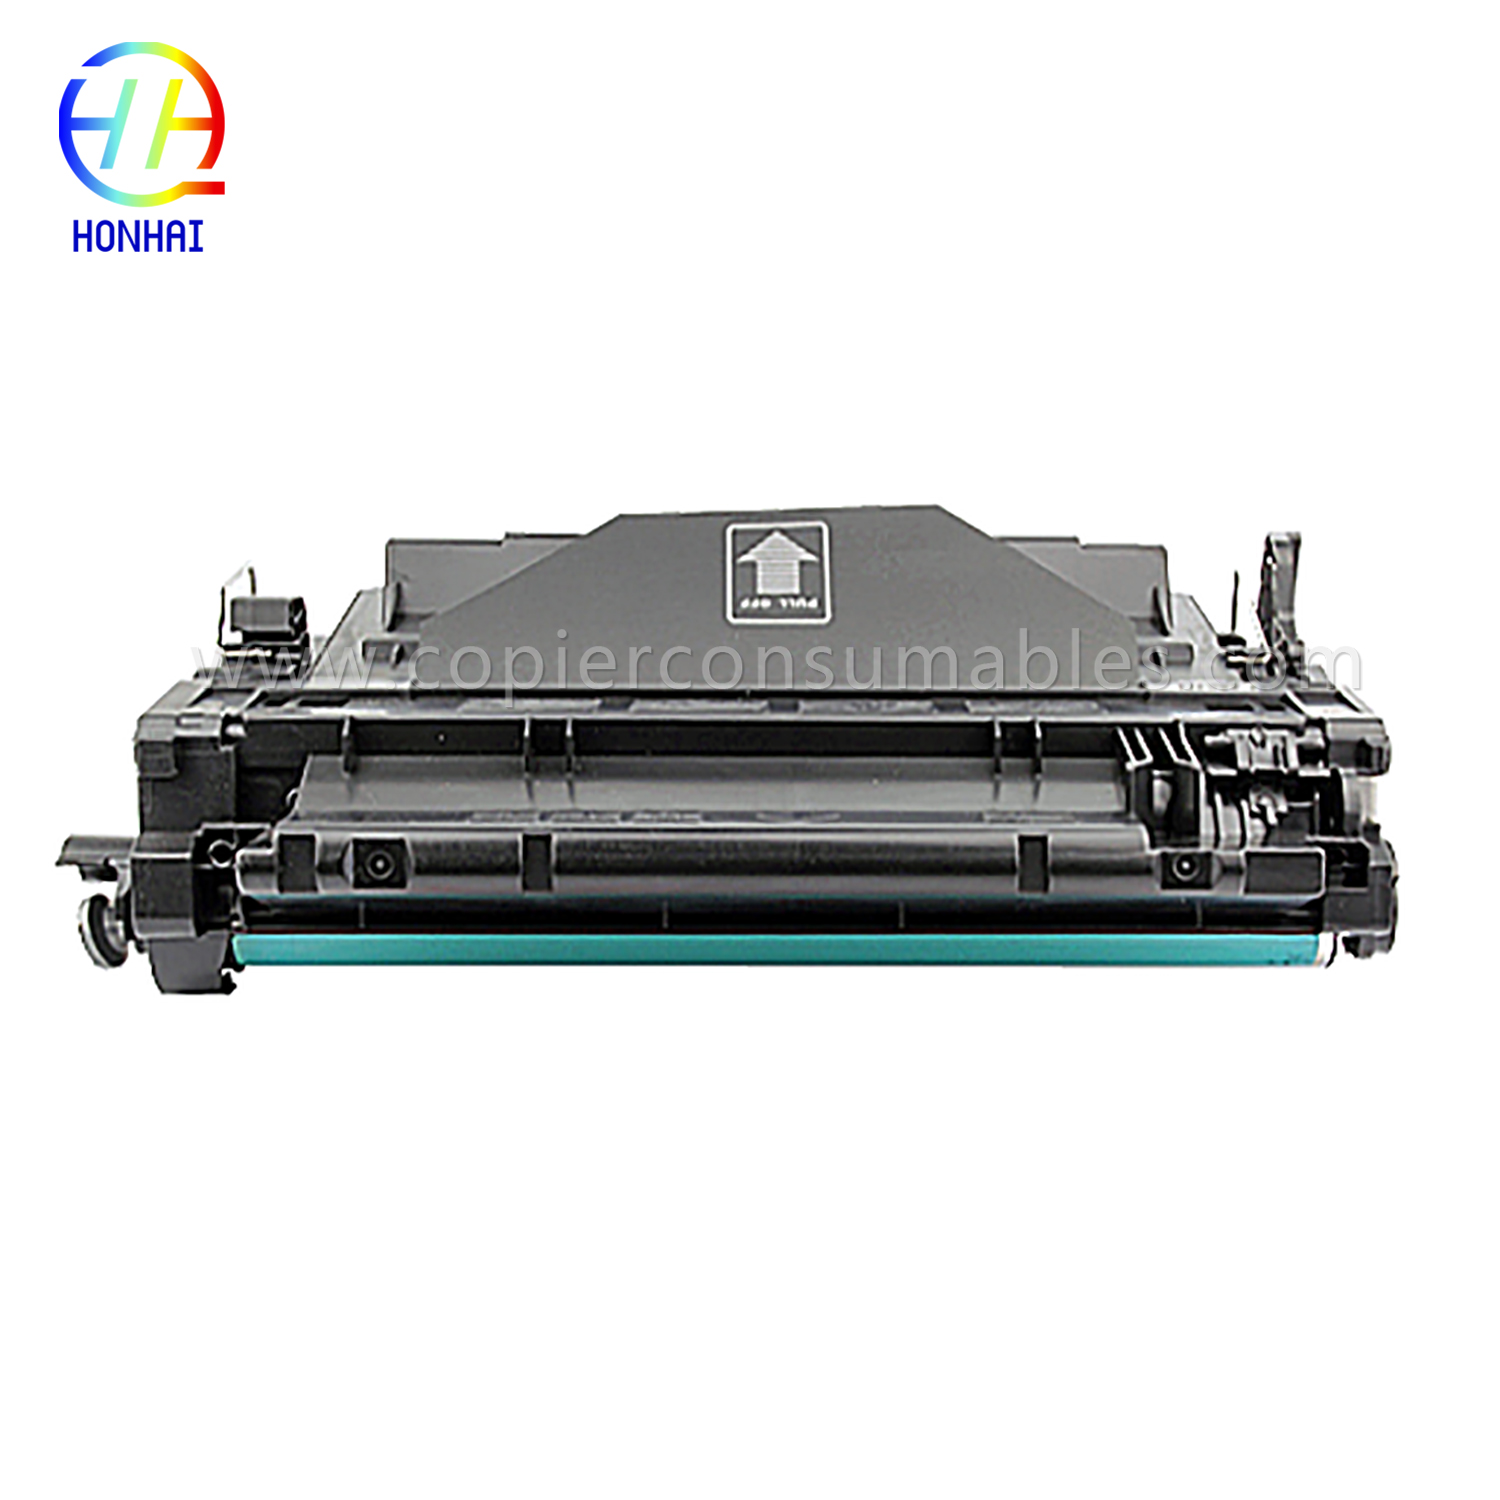 Kartrid Toner Warna HP LaserJet LaserJet Pro MFP M521dn Enterprise P3015 (CE255X) -1 (1) 拷贝